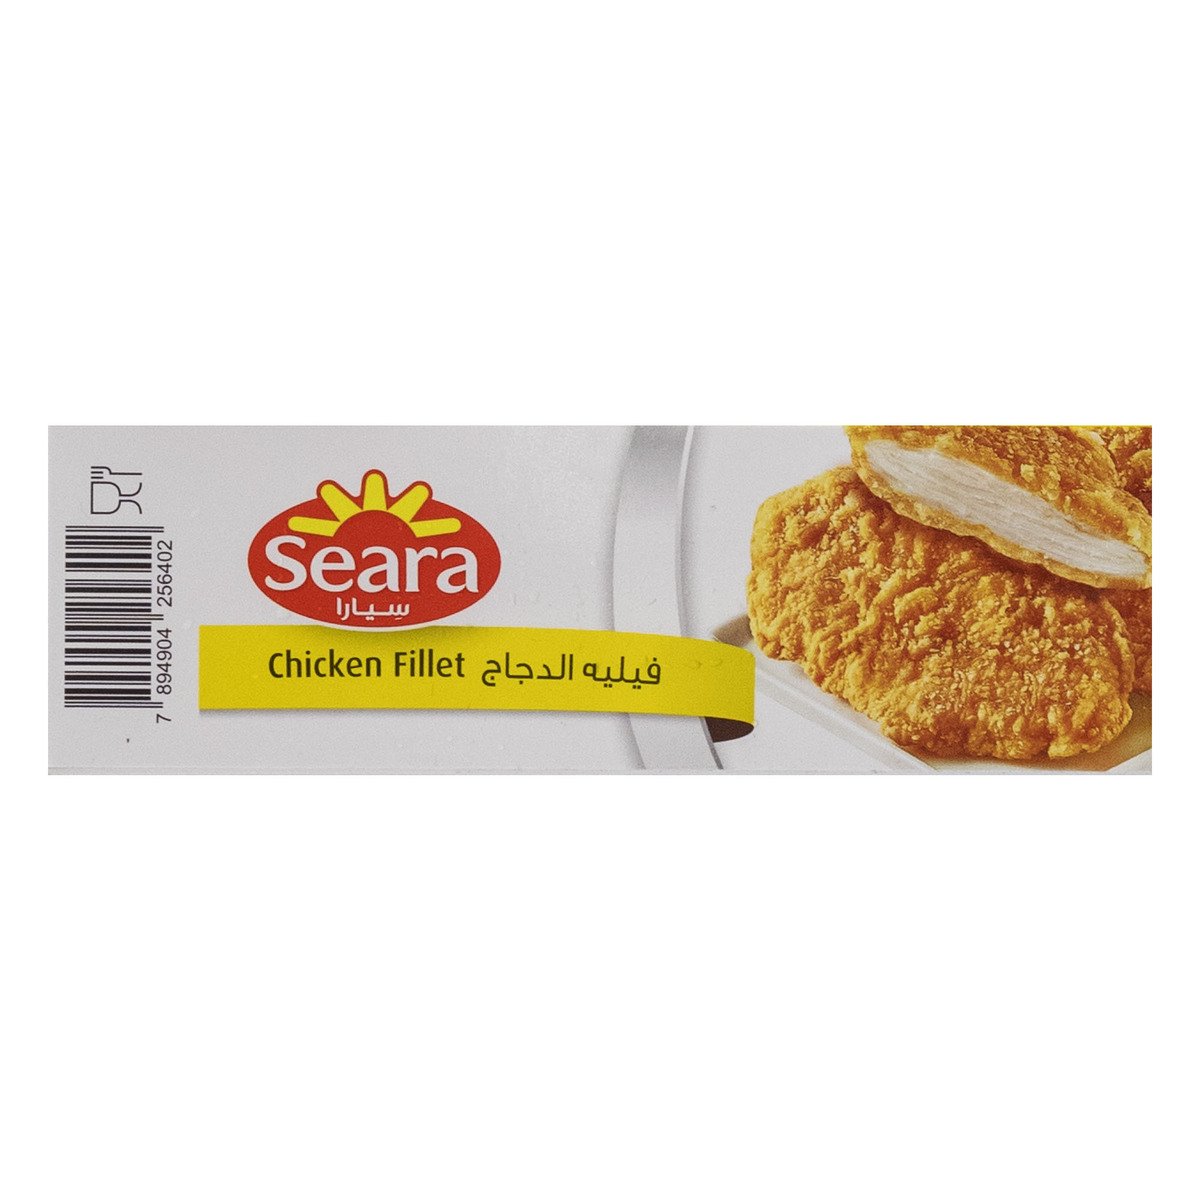 Seara Chicken Fillet 400 g